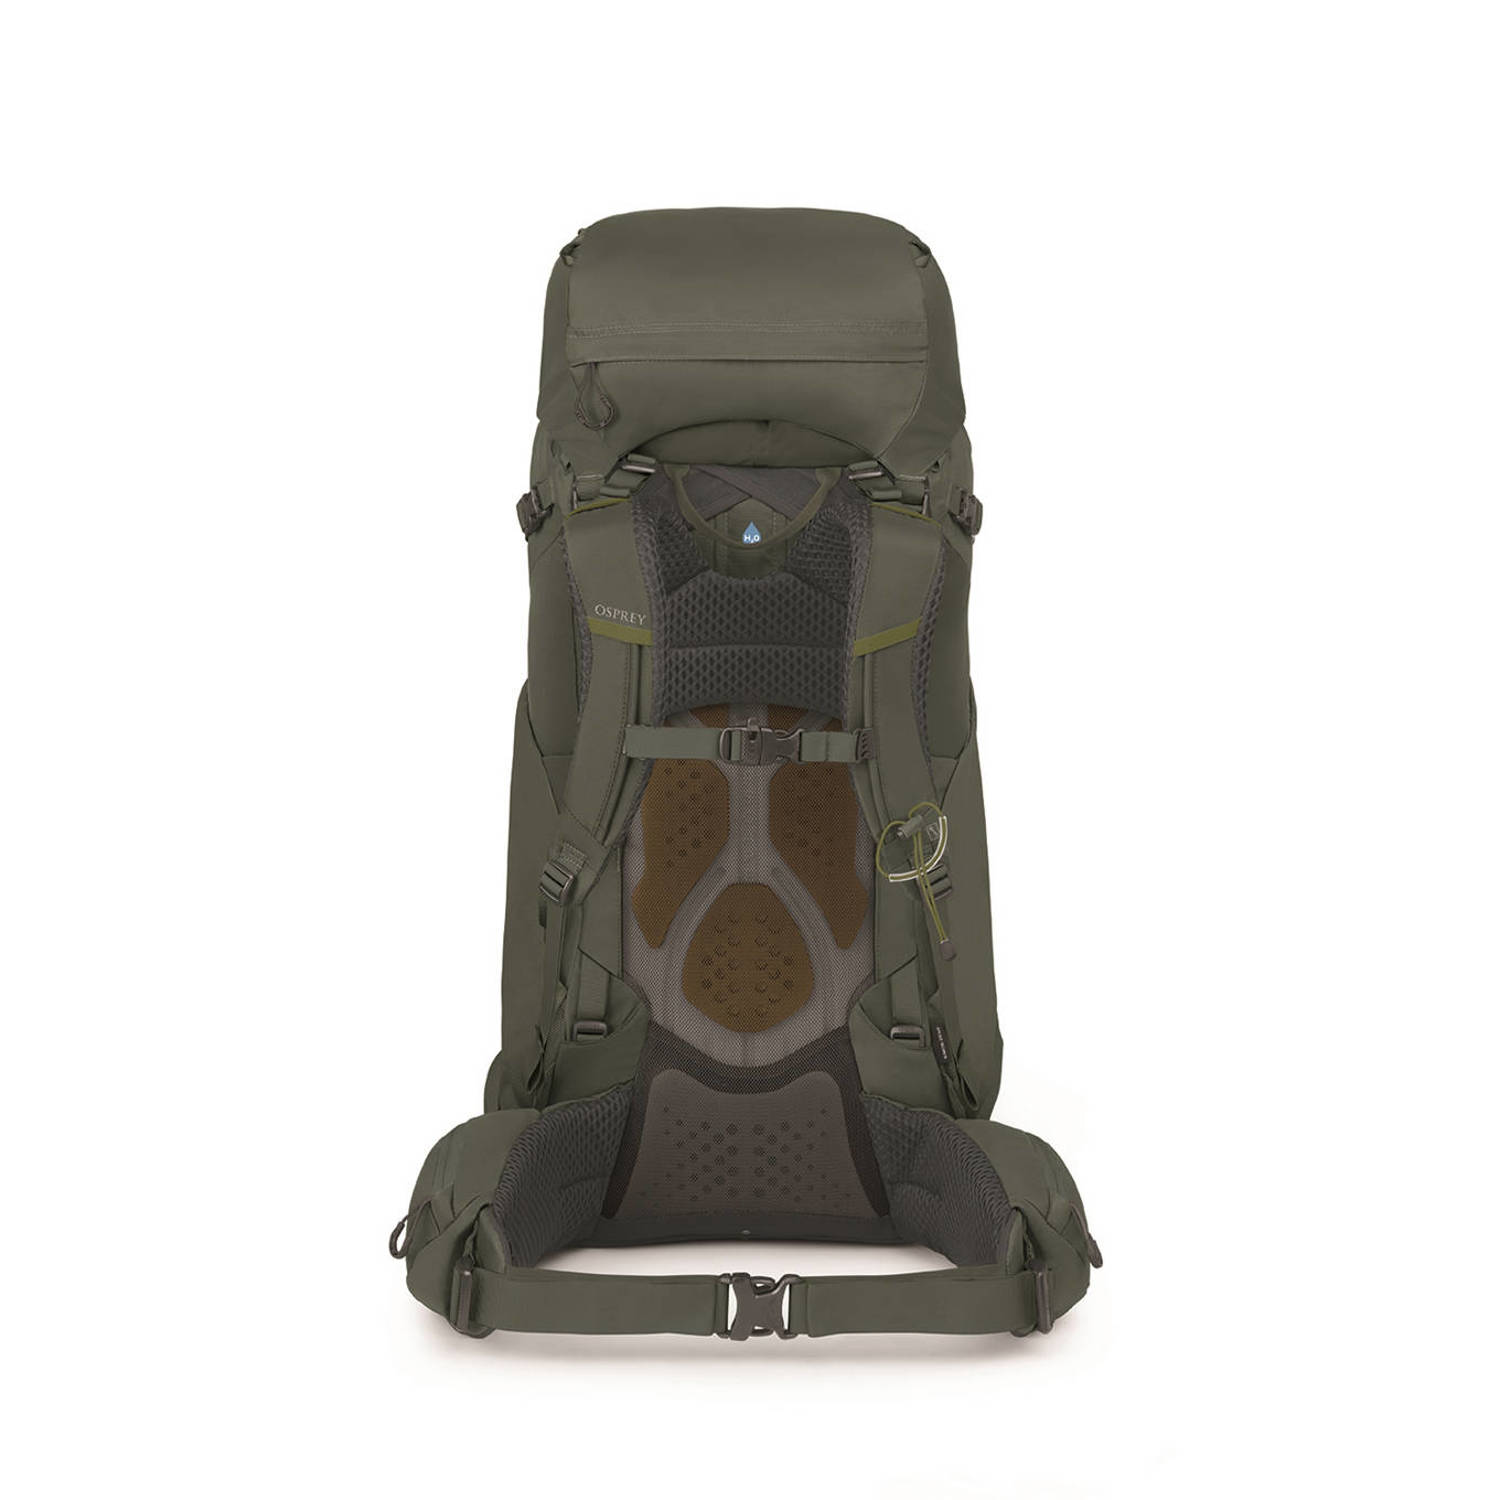 Osprey backpack Kestrel 58L S M kaki